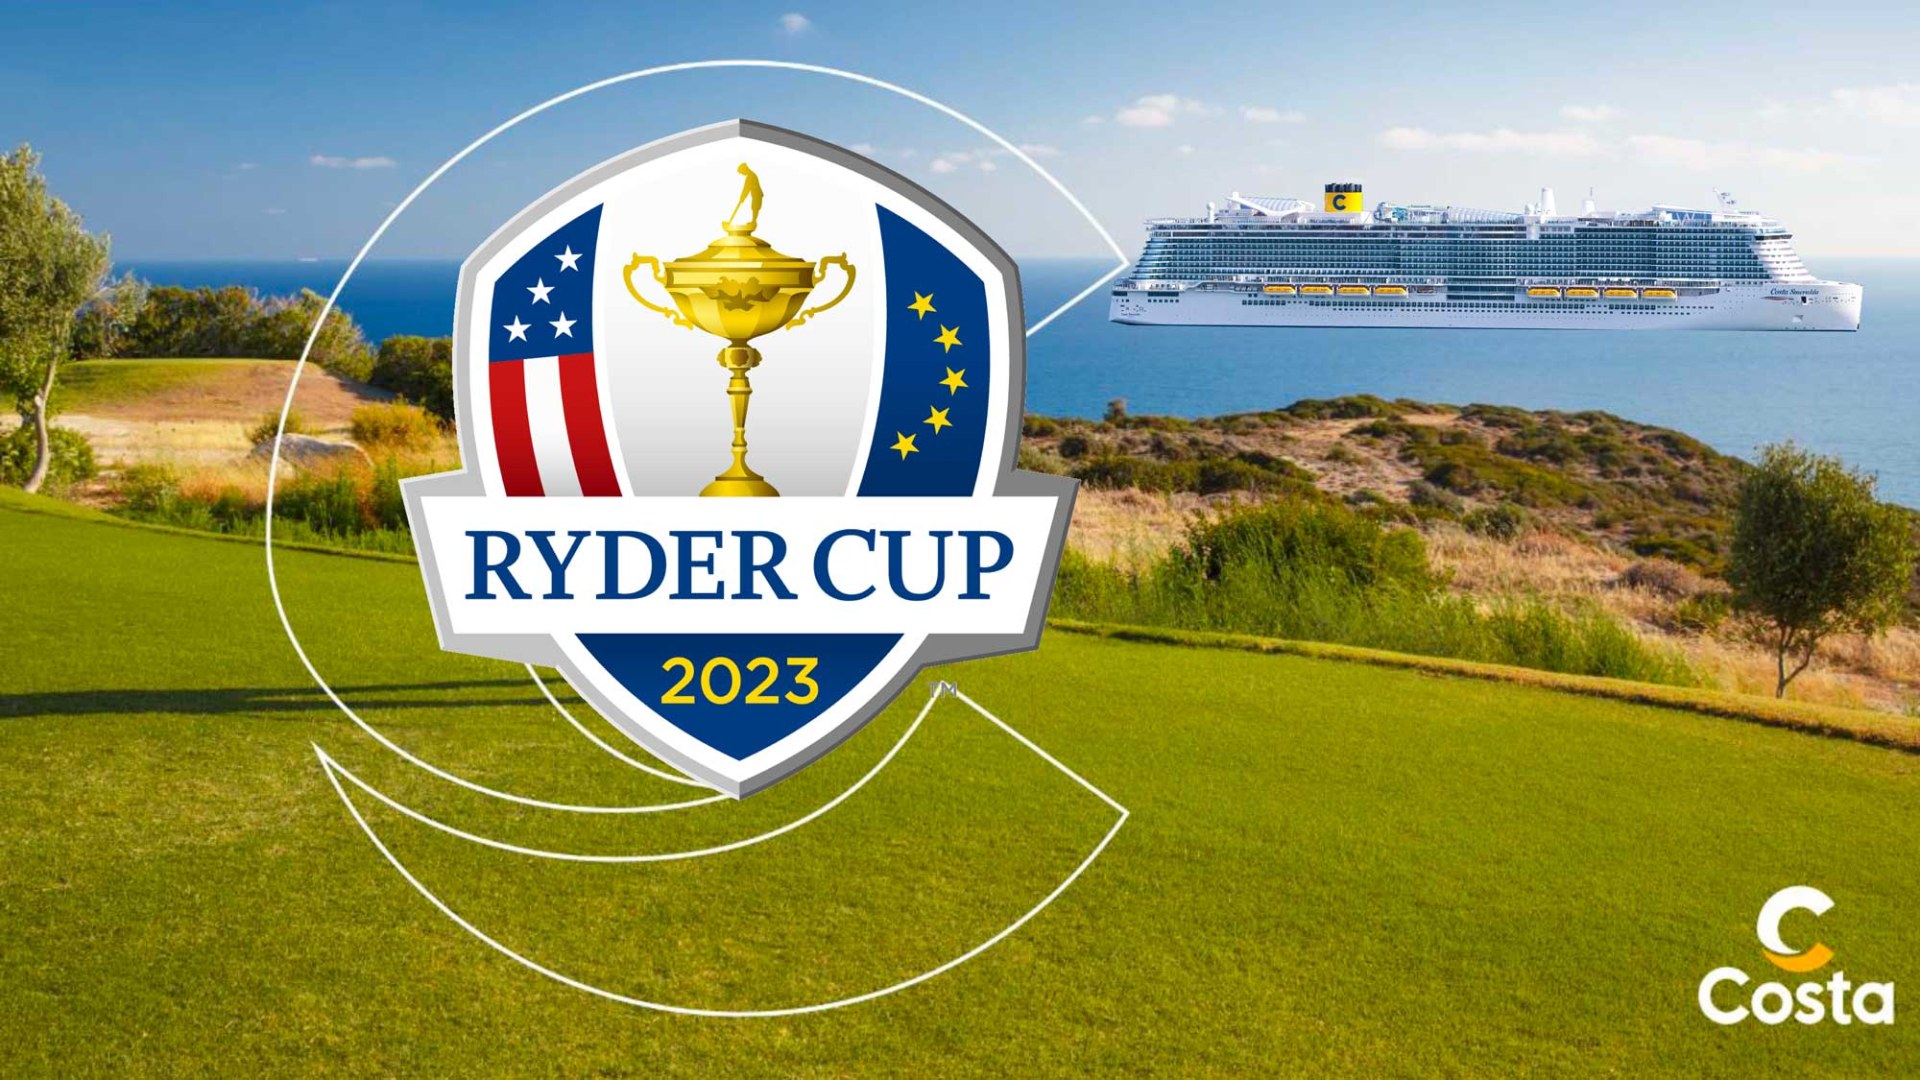 Croisière golf et Ryder Cup 2 jours